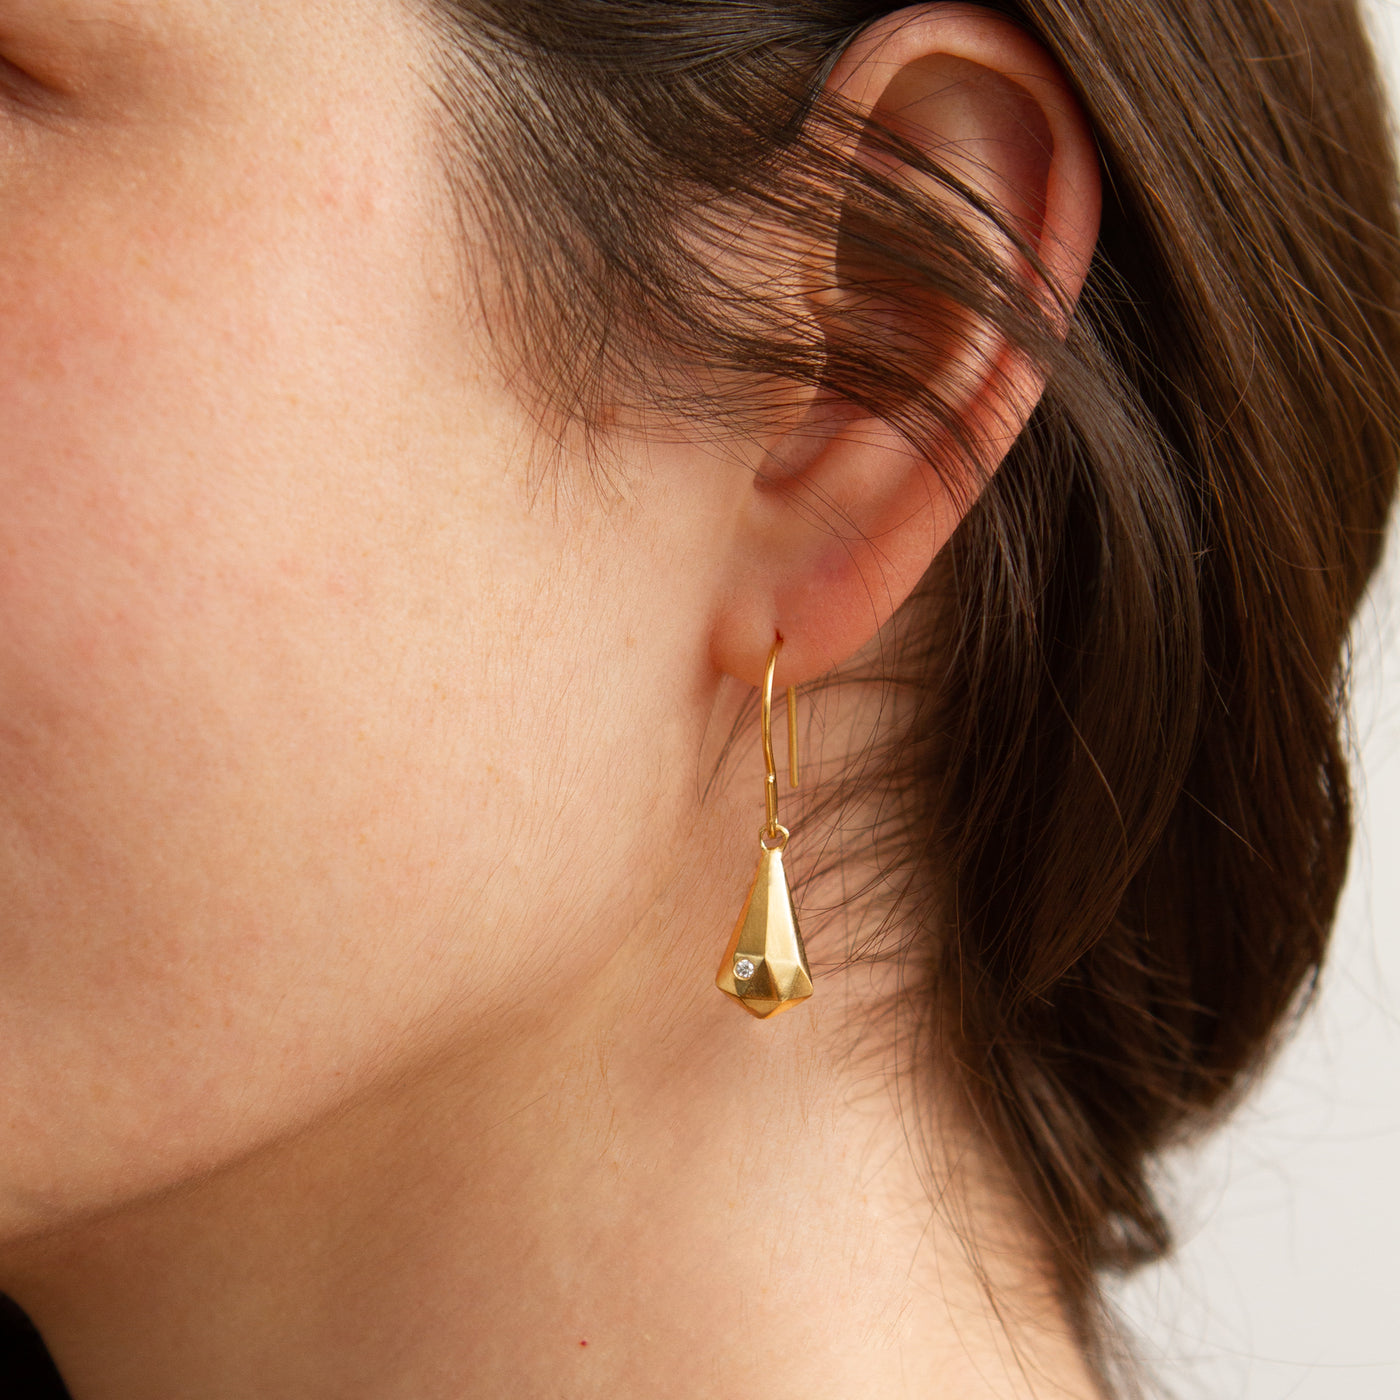 Vermeil and Diamond Crystal Fragment Earrings modeled on an ear